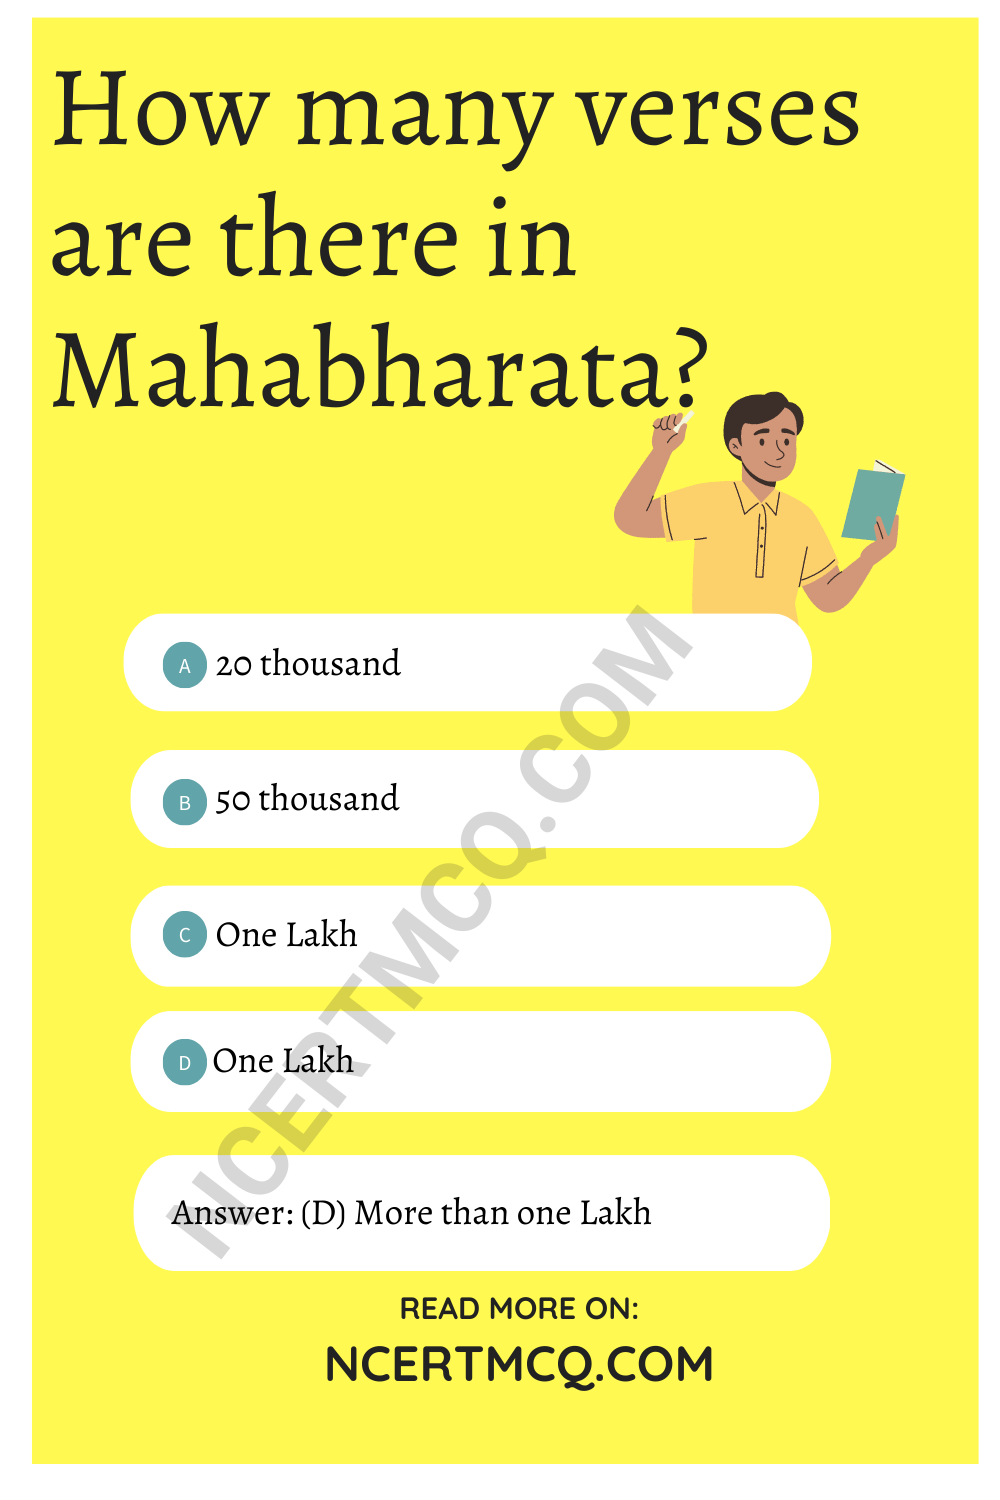 How many verses are there in Mahabharata?